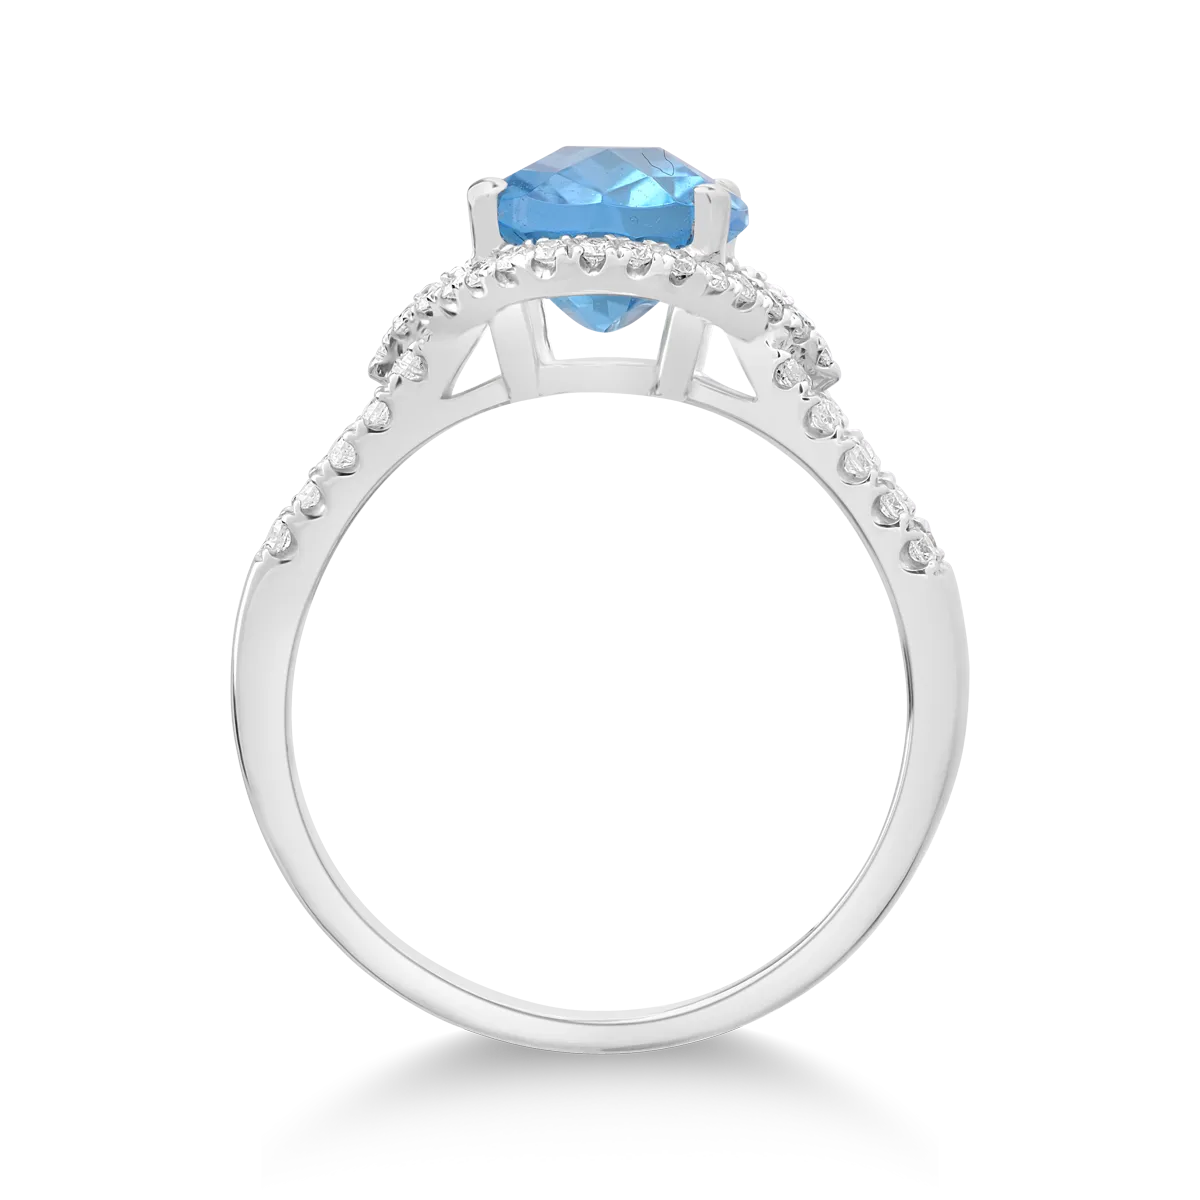 18K fehérarany gyűrű 3ct kék topázzal és 0.38ct gyémántokkal